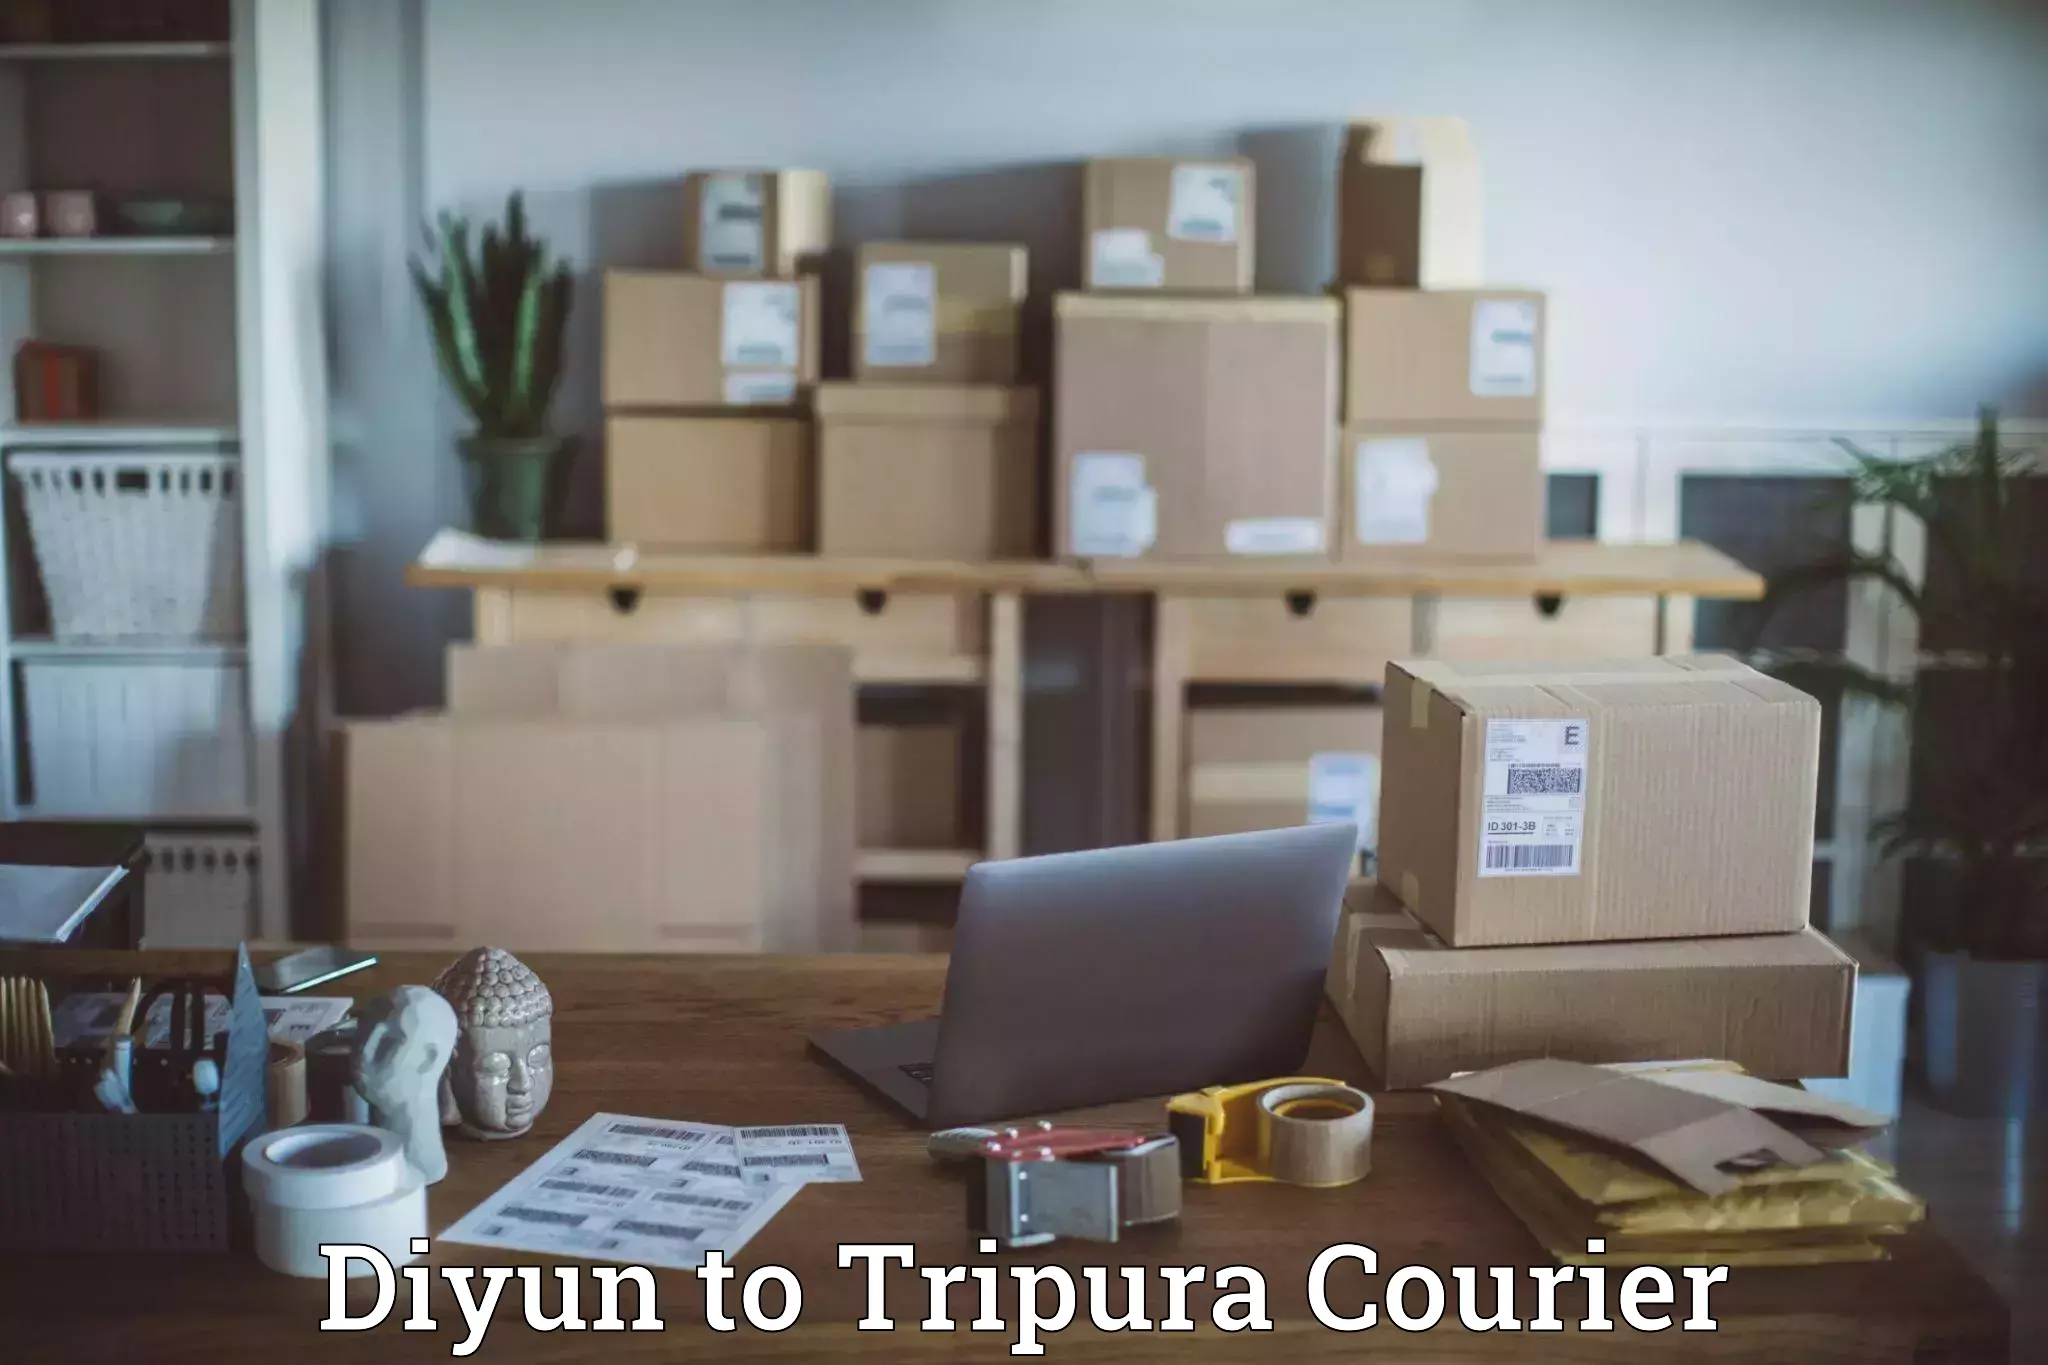 Express courier facilities Diyun to Udaipur Tripura